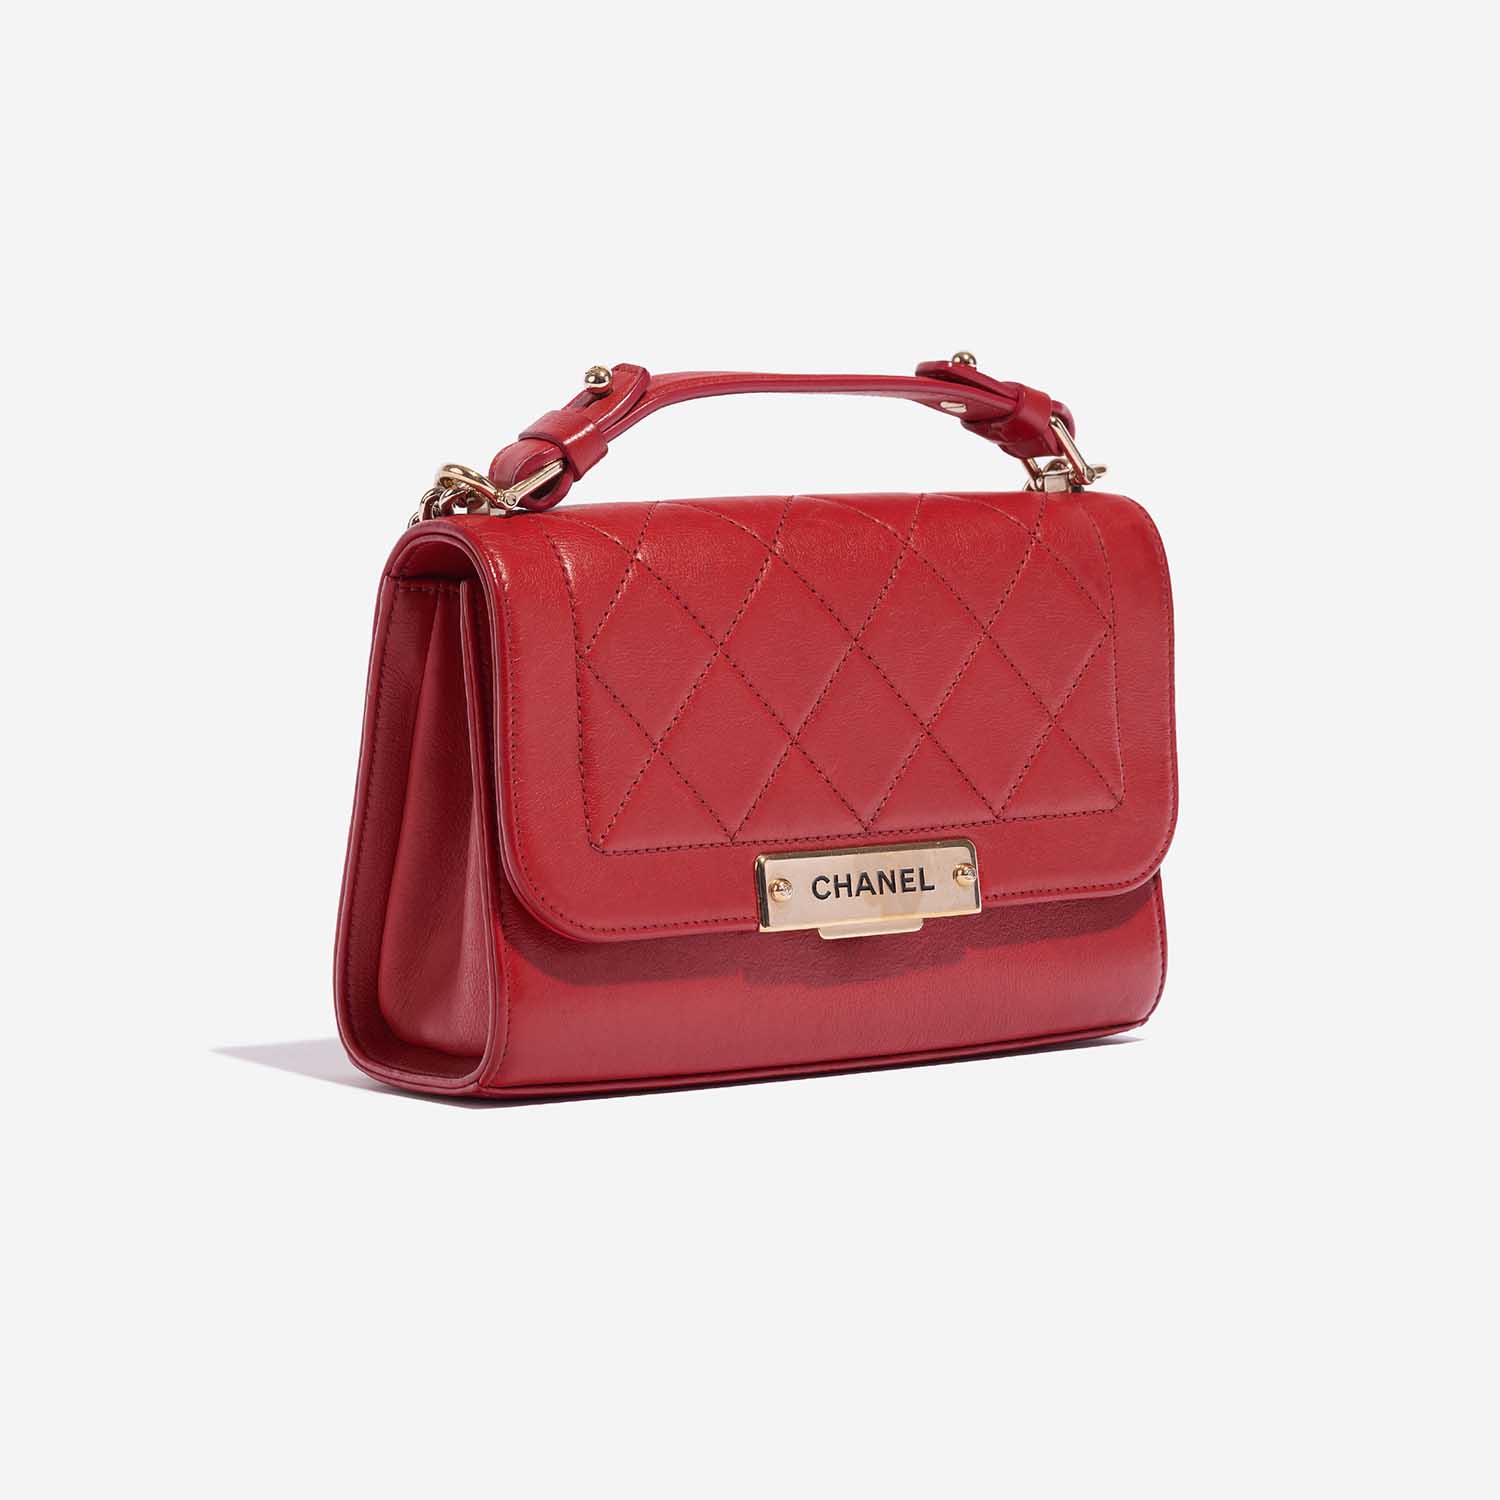 Pre-owned Chanel Tasche Flap Bag Handle Lammleder Red Red Side Front | Verkaufen Sie Ihre Designer-Tasche auf Saclab.com